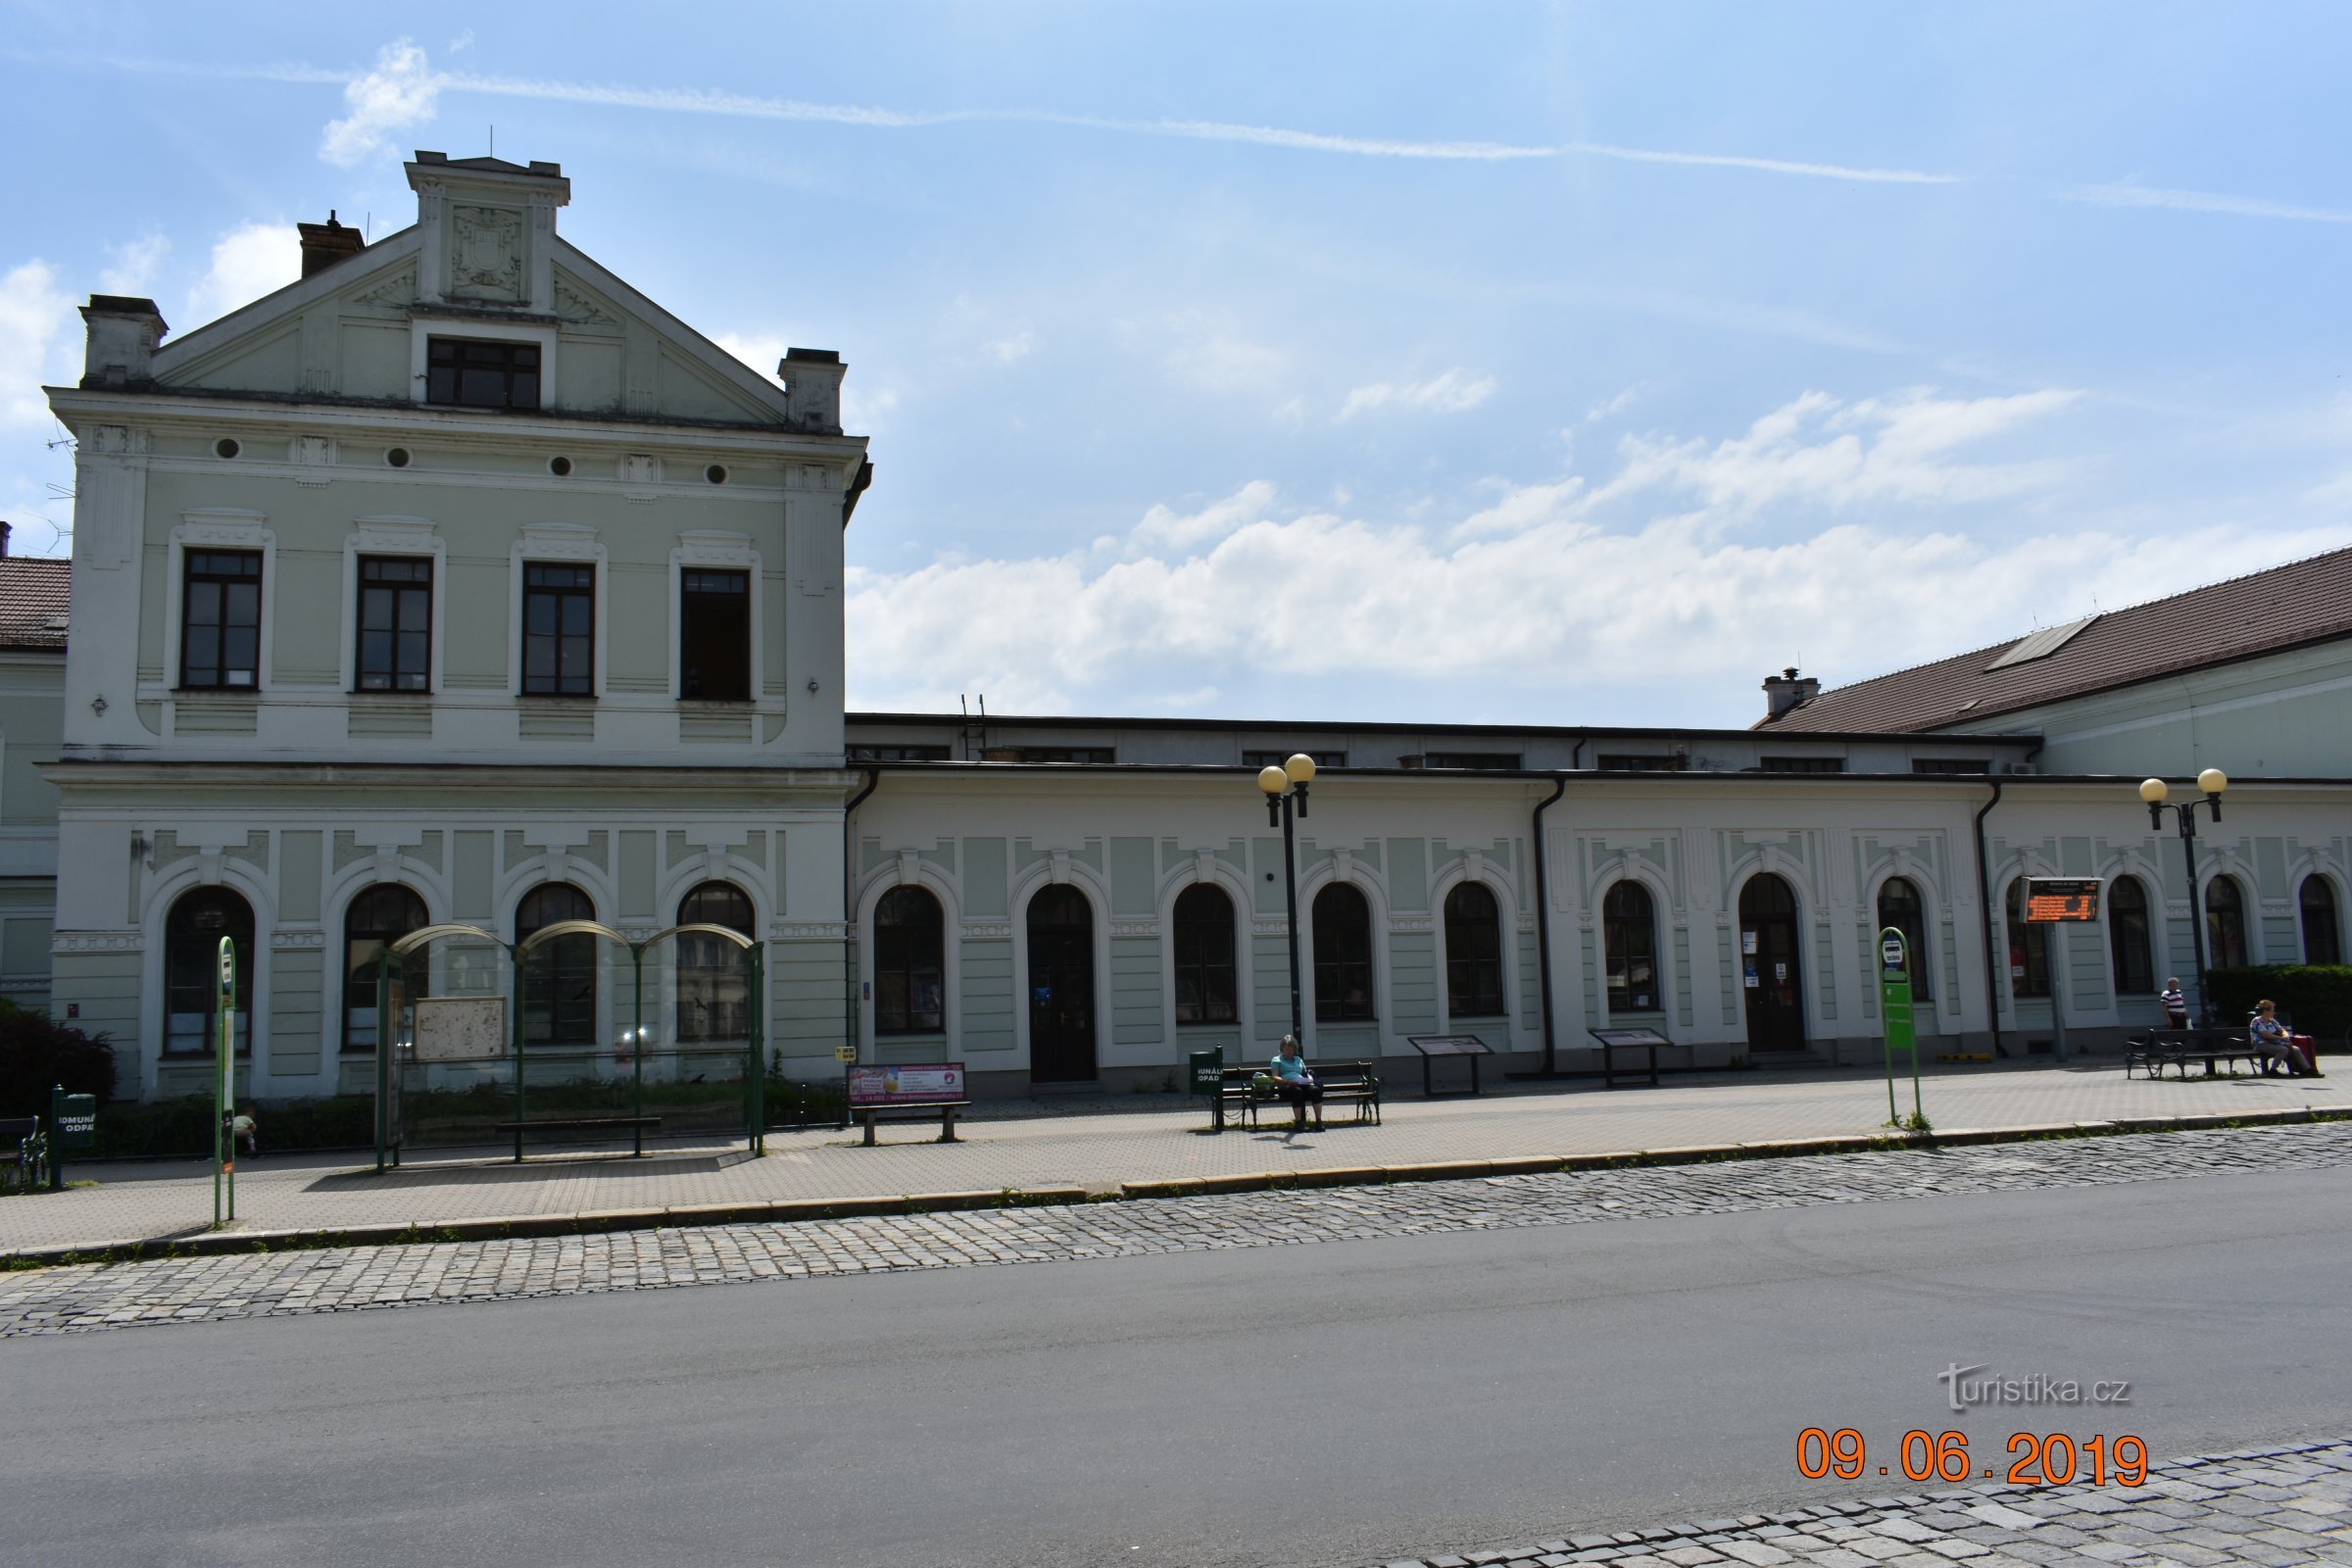 Το κτήριο αποστολής του σιδηροδρομικού σταθμού Bohumín